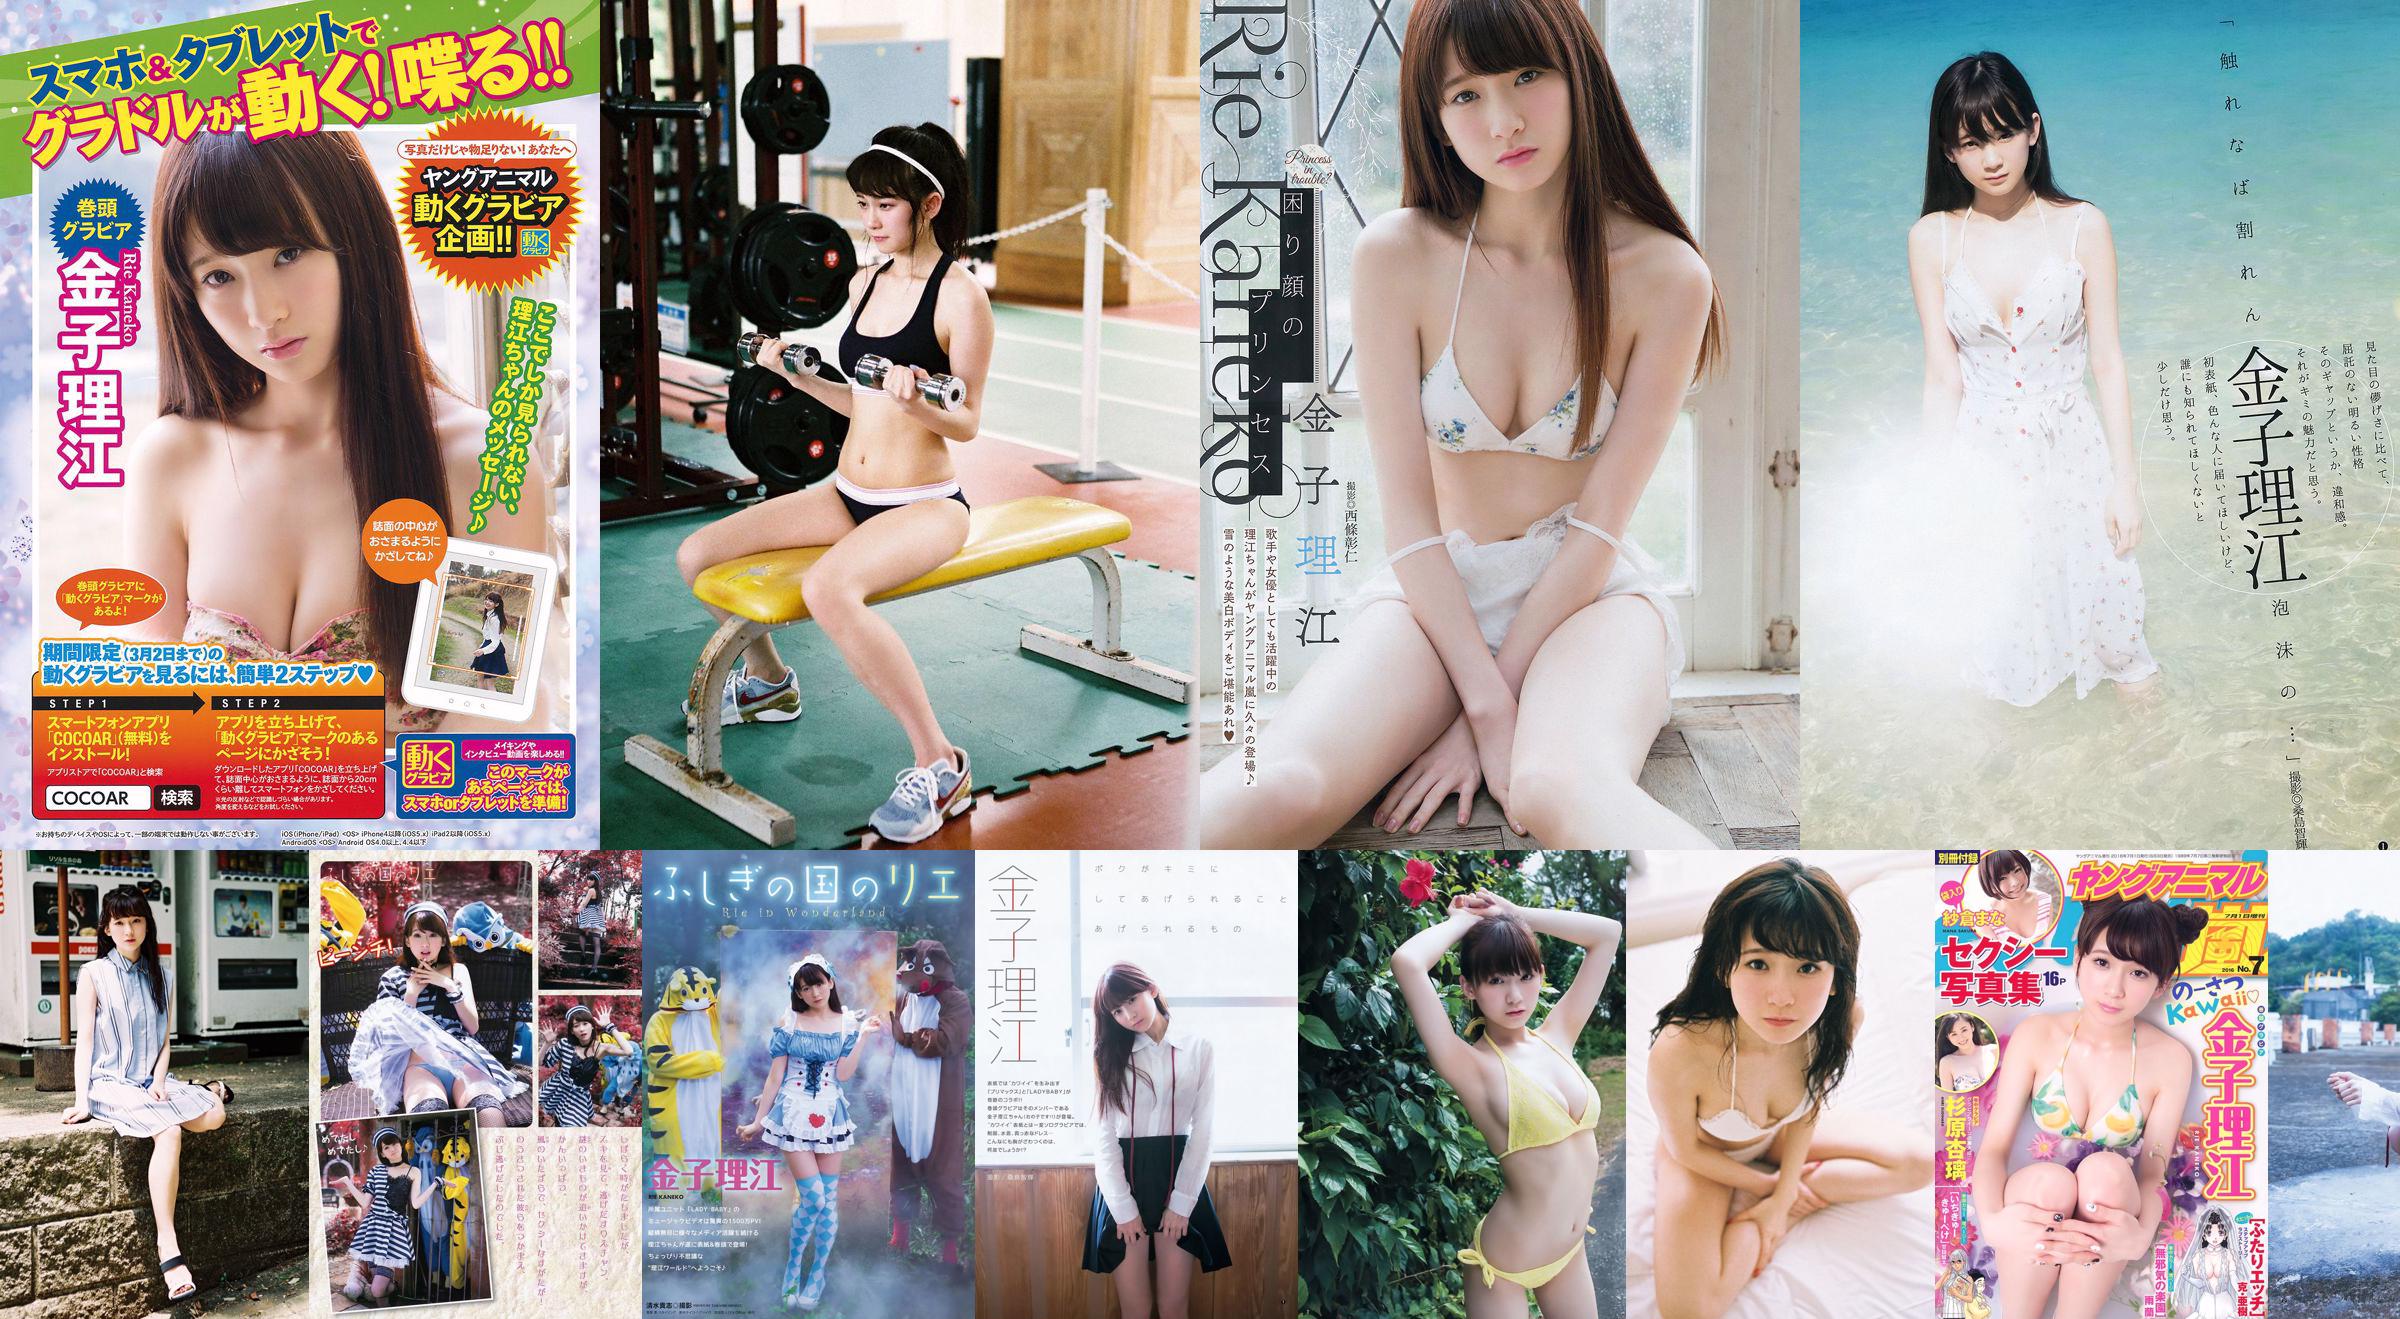 Rie Kaneko, Anri Sugihara, Sakura まな [Young Animal Arashi Special Issue] No.07 2016 Photo Magazine No.473e52 หน้า 4